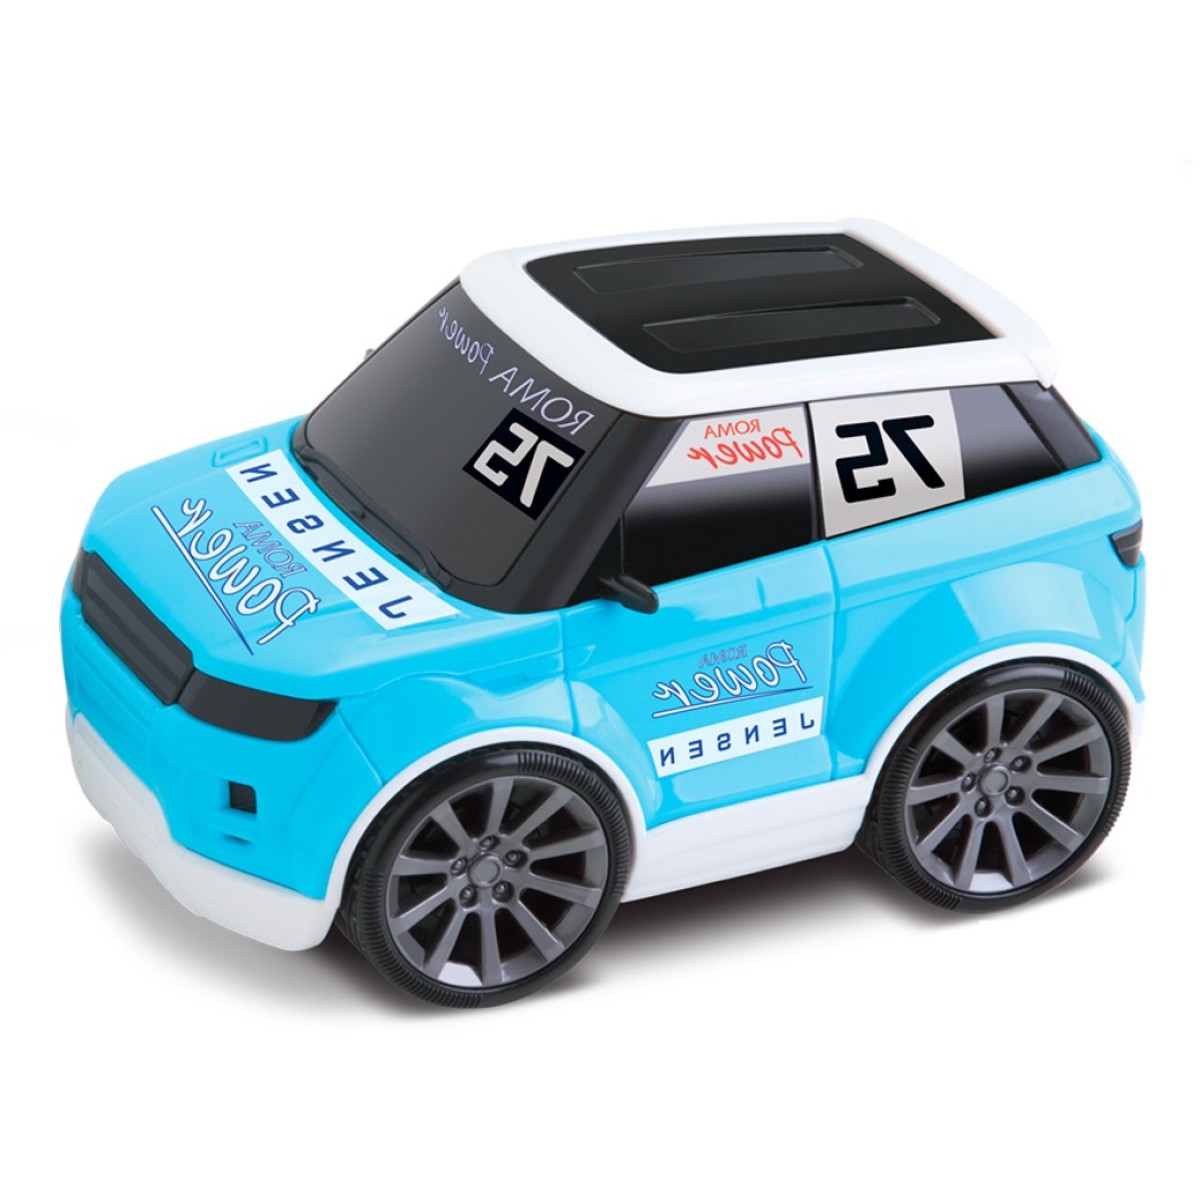 Carro De Corrida Infantil Next Race Sport Brinquedos Luxo